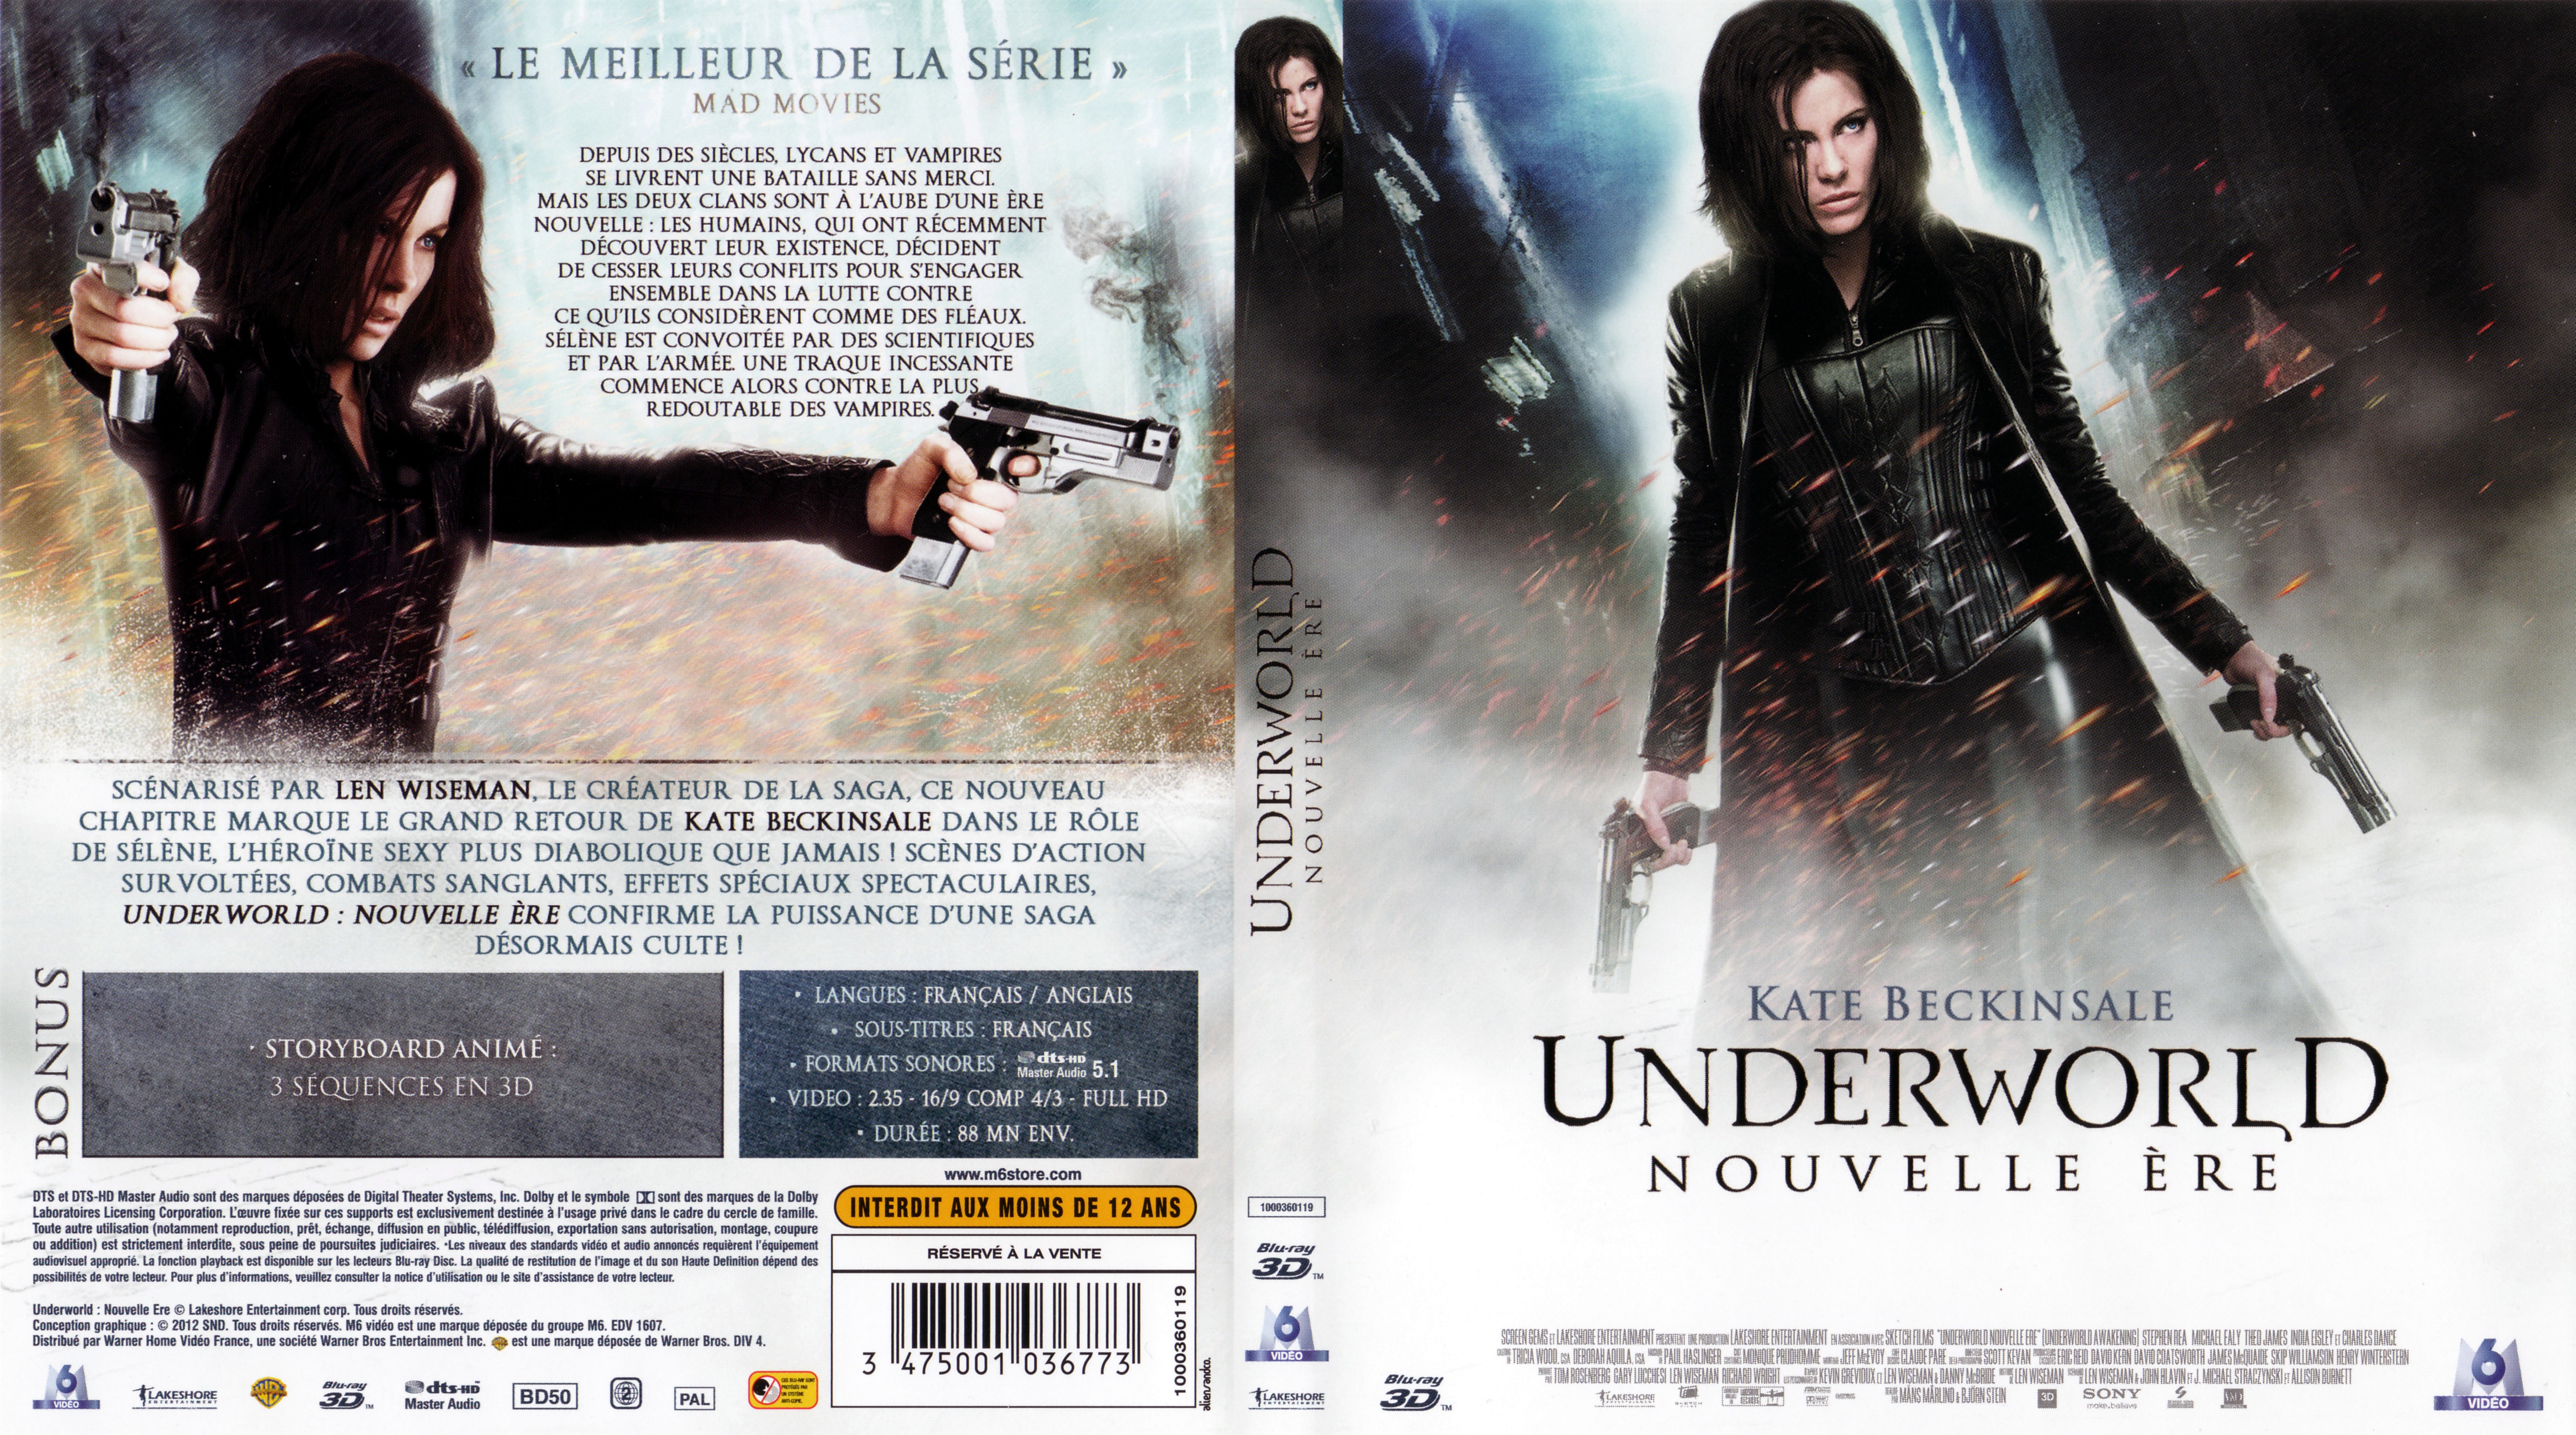 Jaquette DVD Underworld Nouvelle re 3D (BLU-RAY)